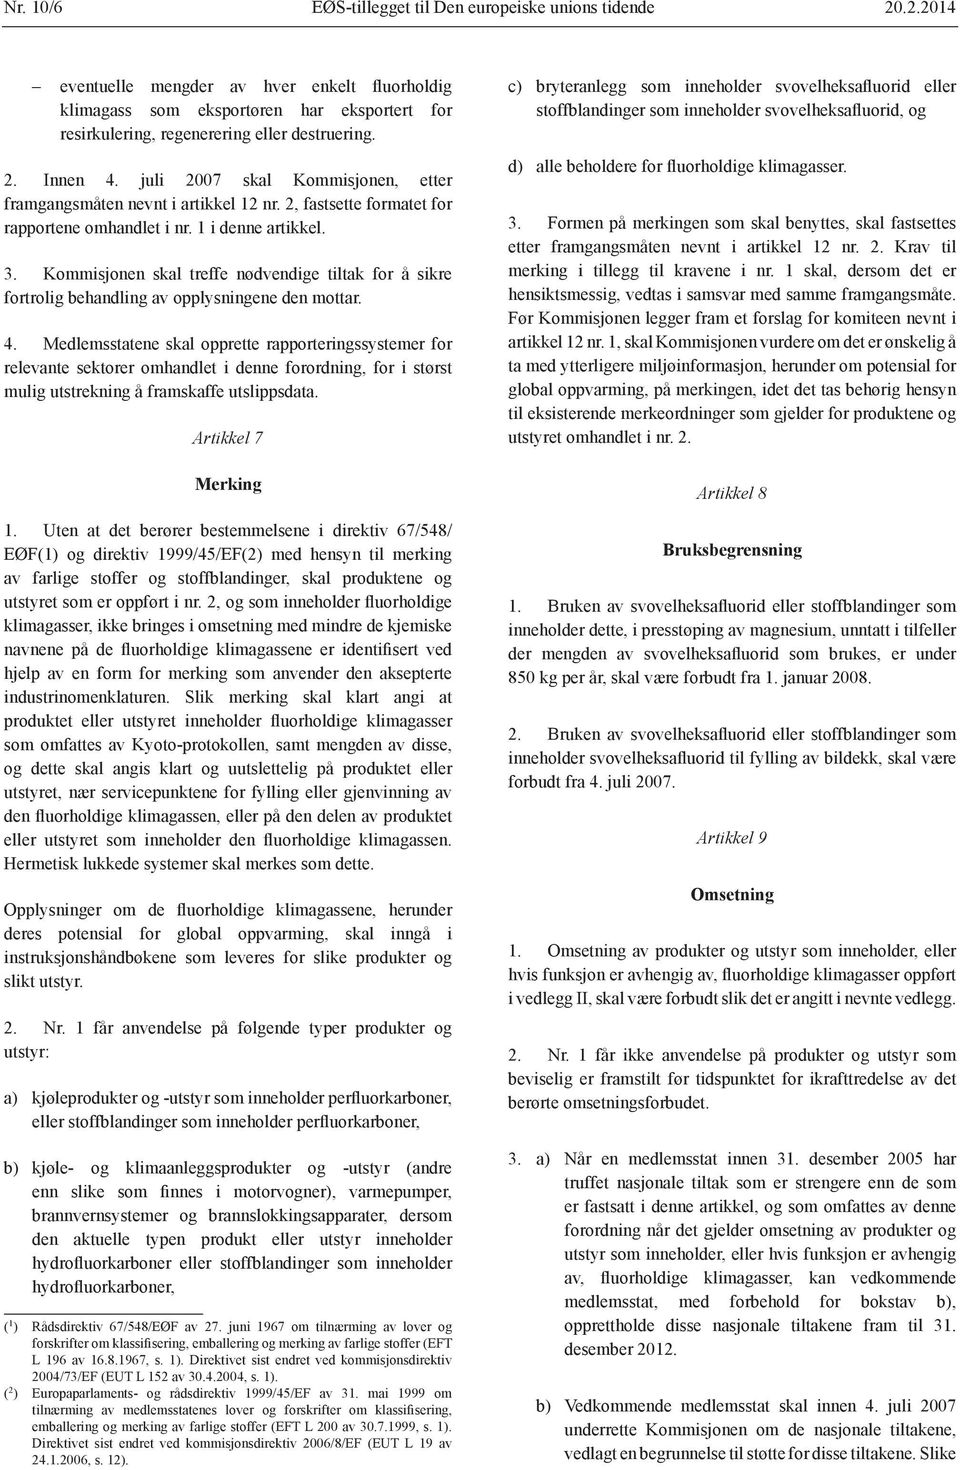 juli 2007 skal Kommisjonen, etter framgangsmåten nevnt i artikkel 12 nr. 2, fastsette formatet for rapportene omhandlet i nr. 1 i denne artikkel. 3.